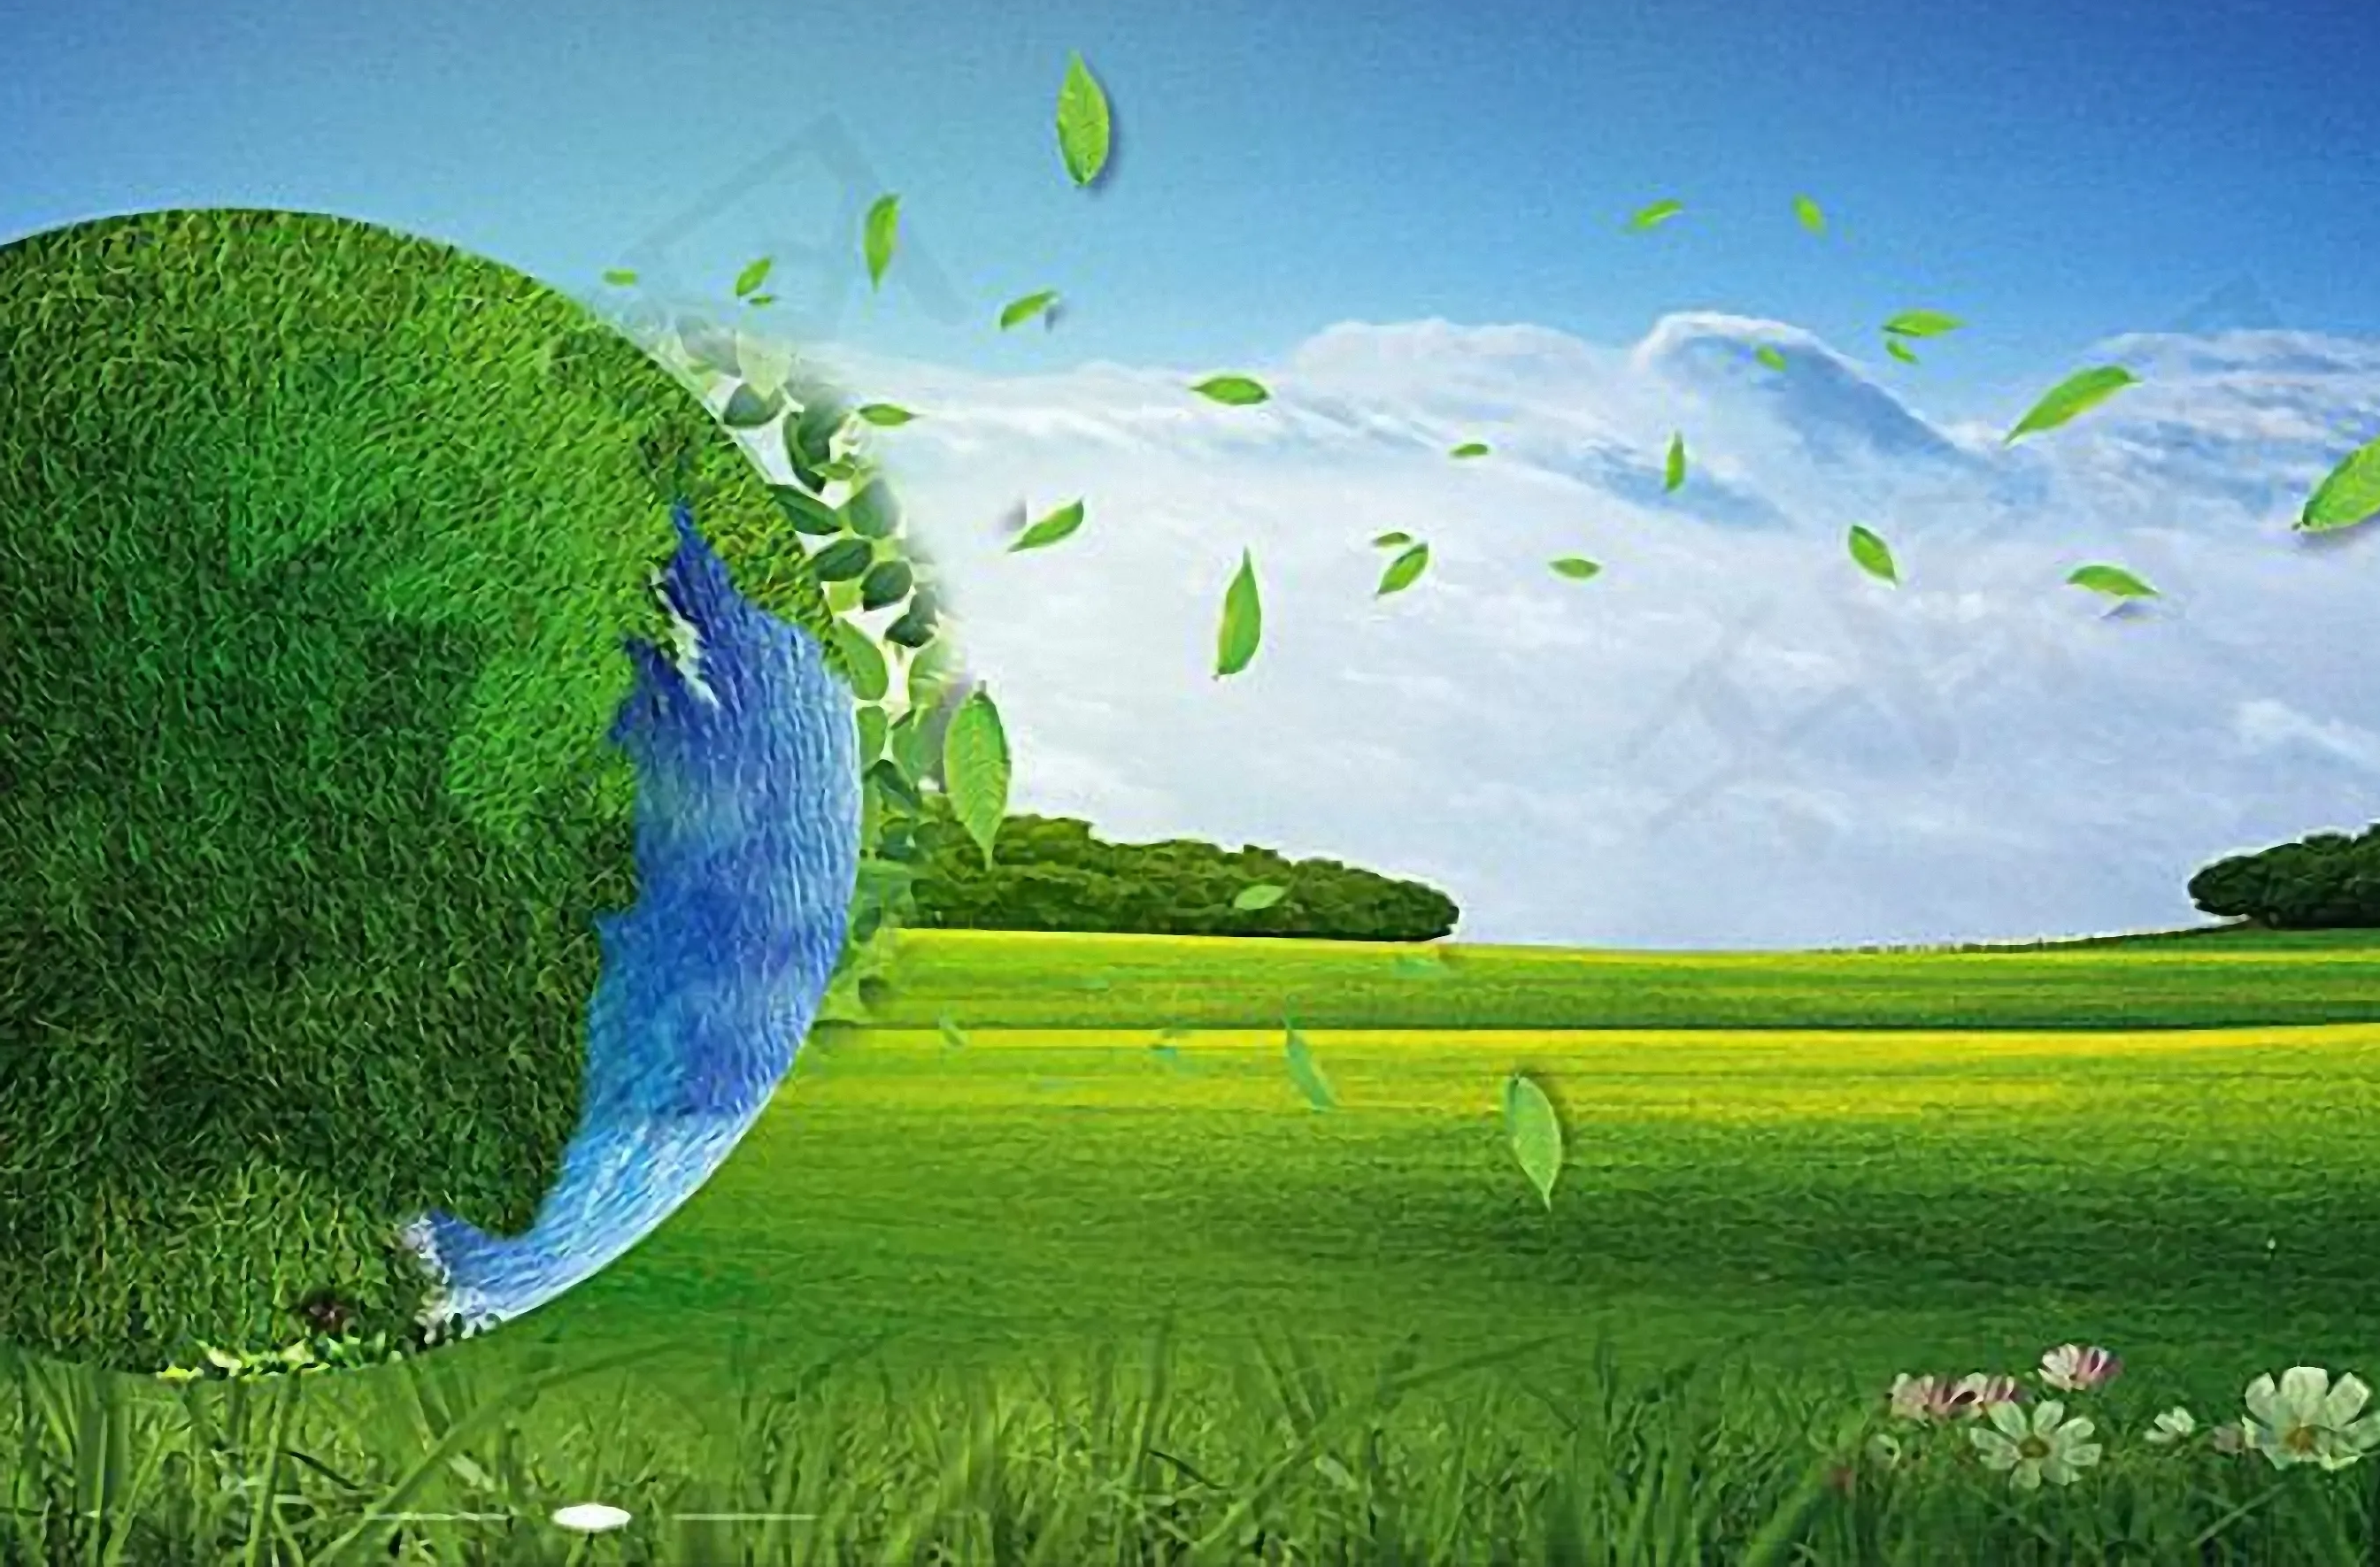 騰訊云與山鷹國際等企業簽署戰略合作協議 攜手推進行業綠色低碳轉型